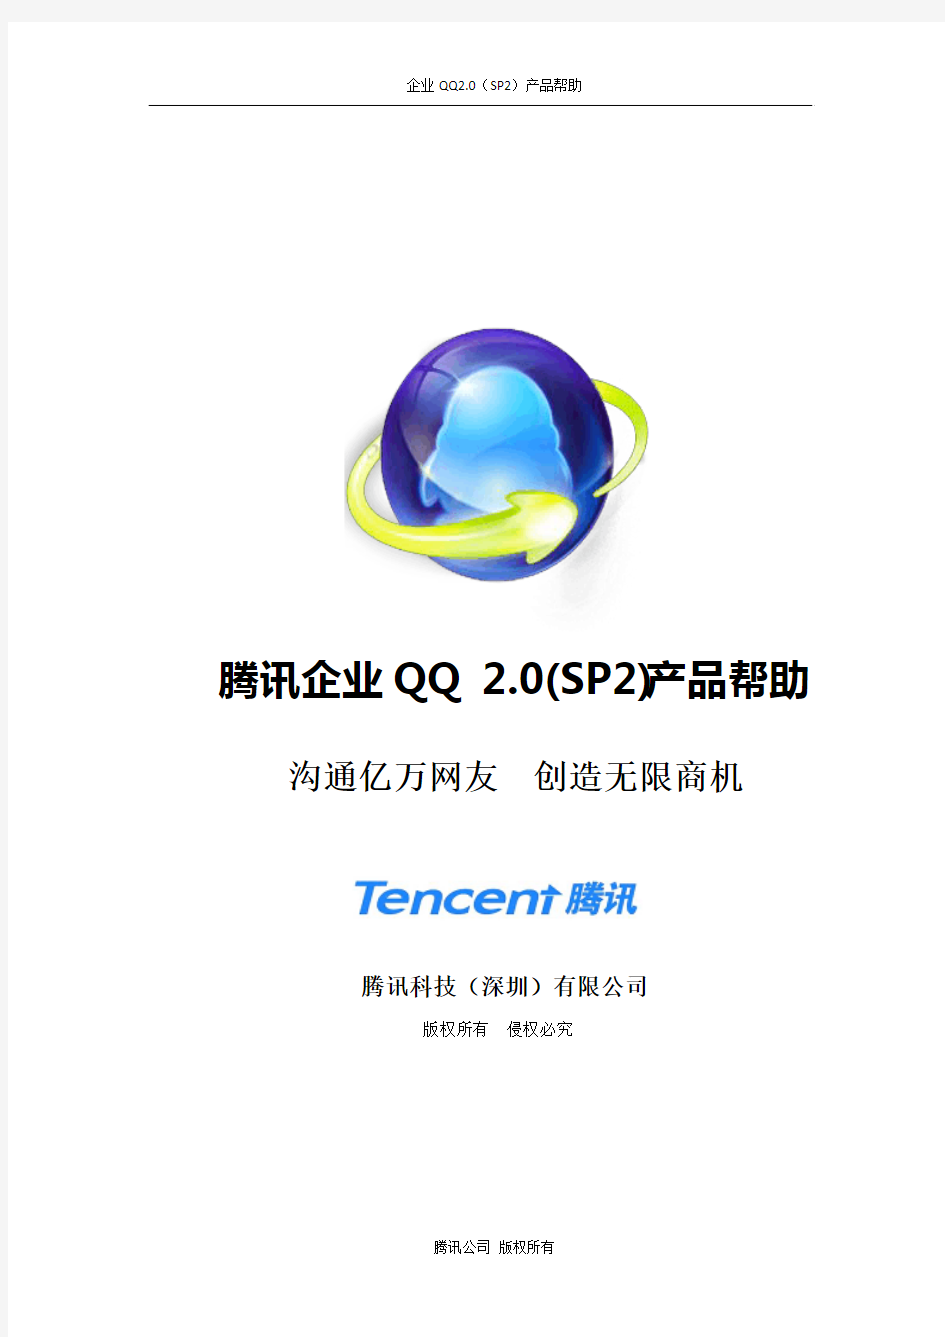 腾讯企业QQ 2.0(SP2)产品帮助